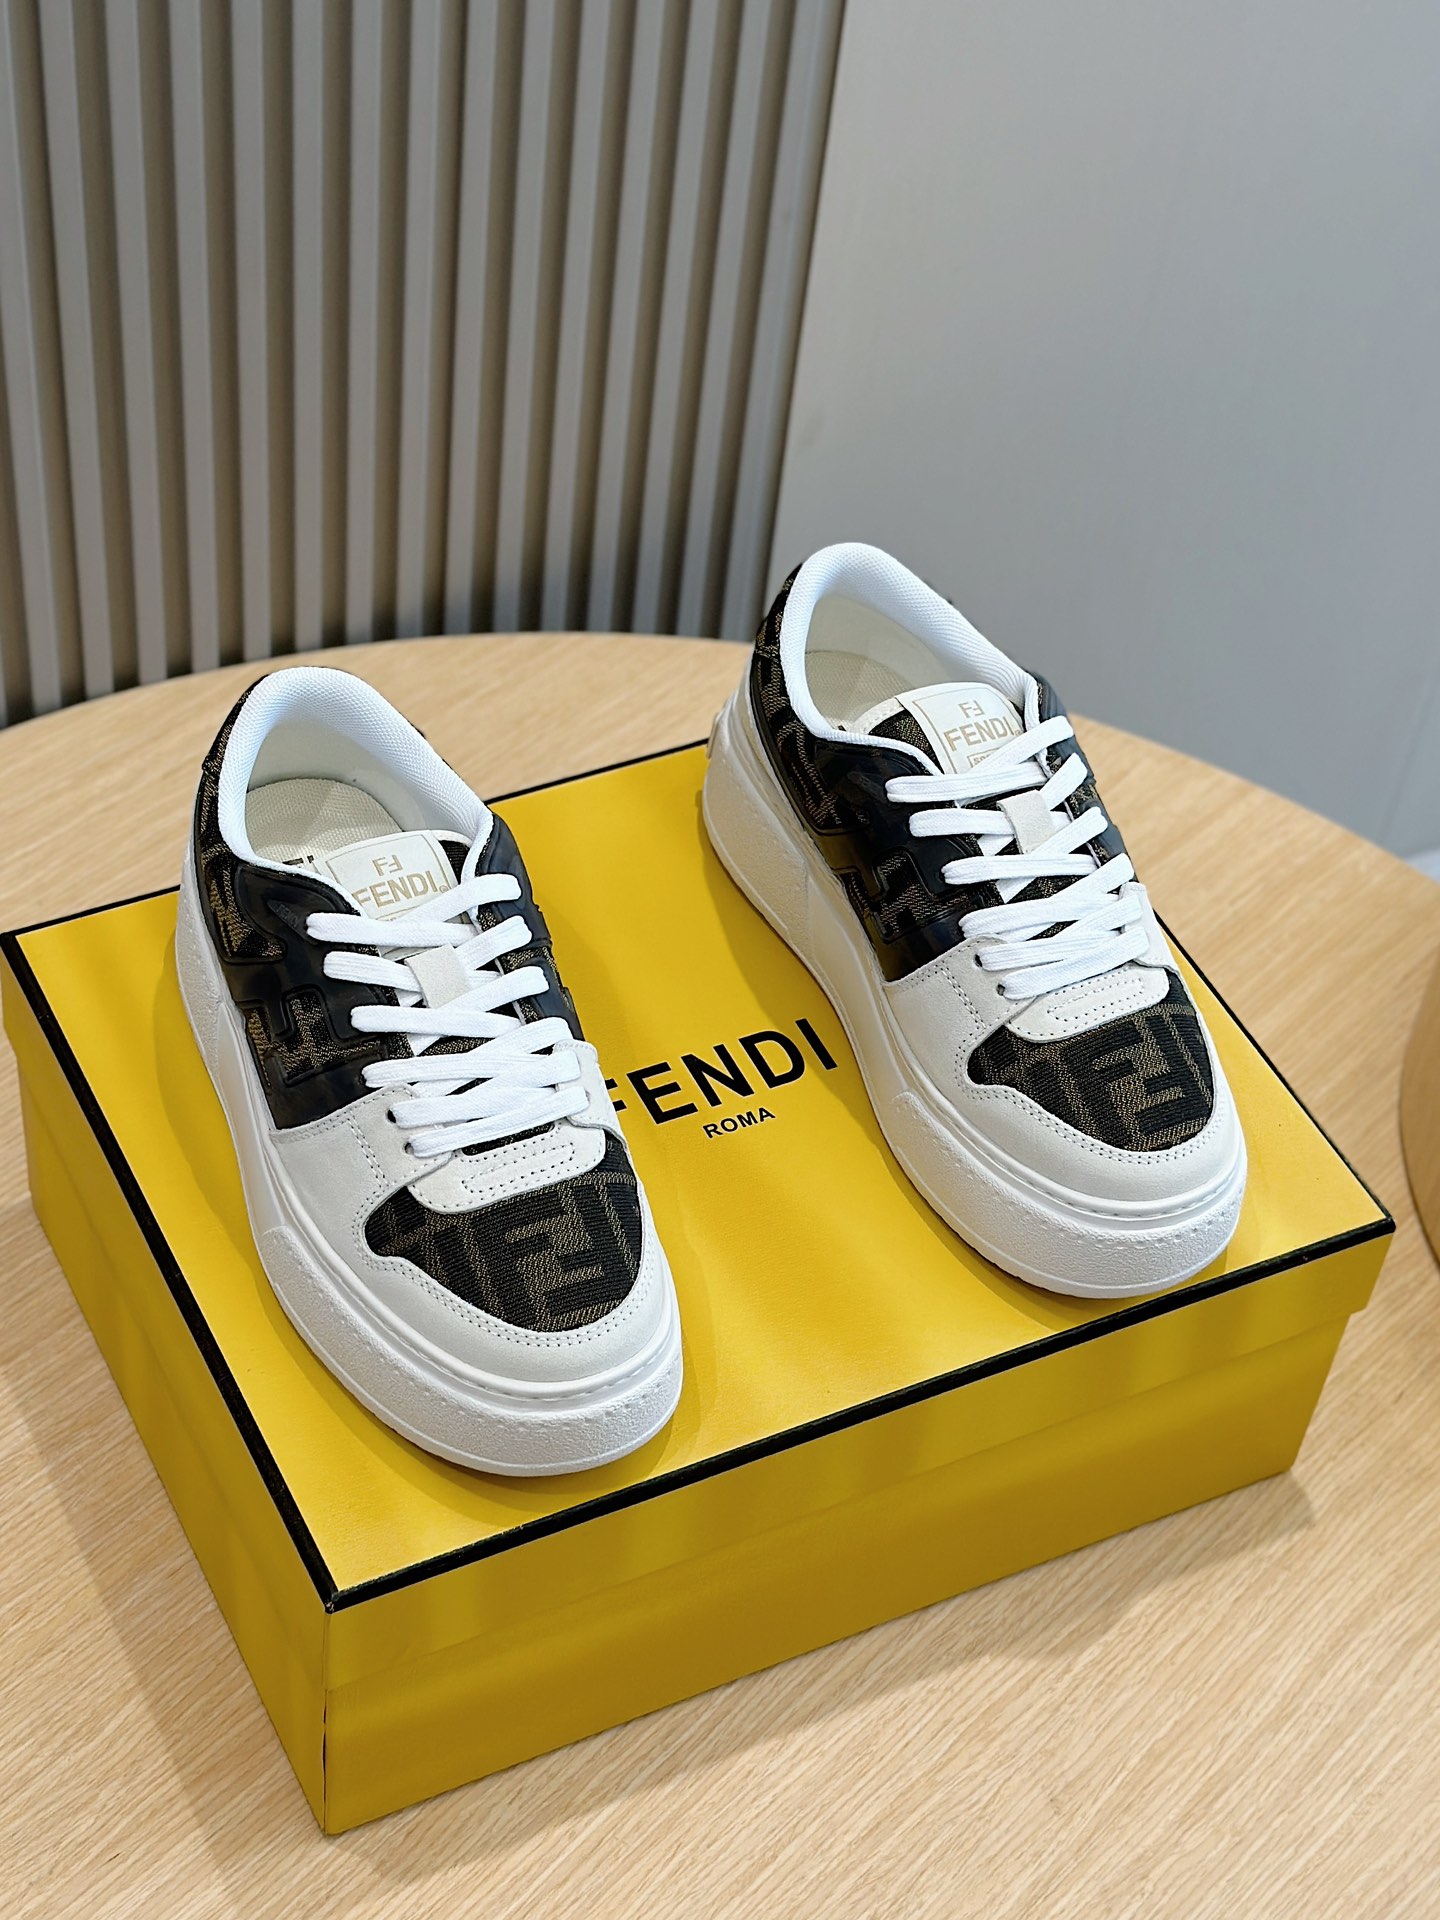 פנדי נעליים סניקרס חום אפור לבן ניסקס שמואיzaire2006. kgm גומא רגיל